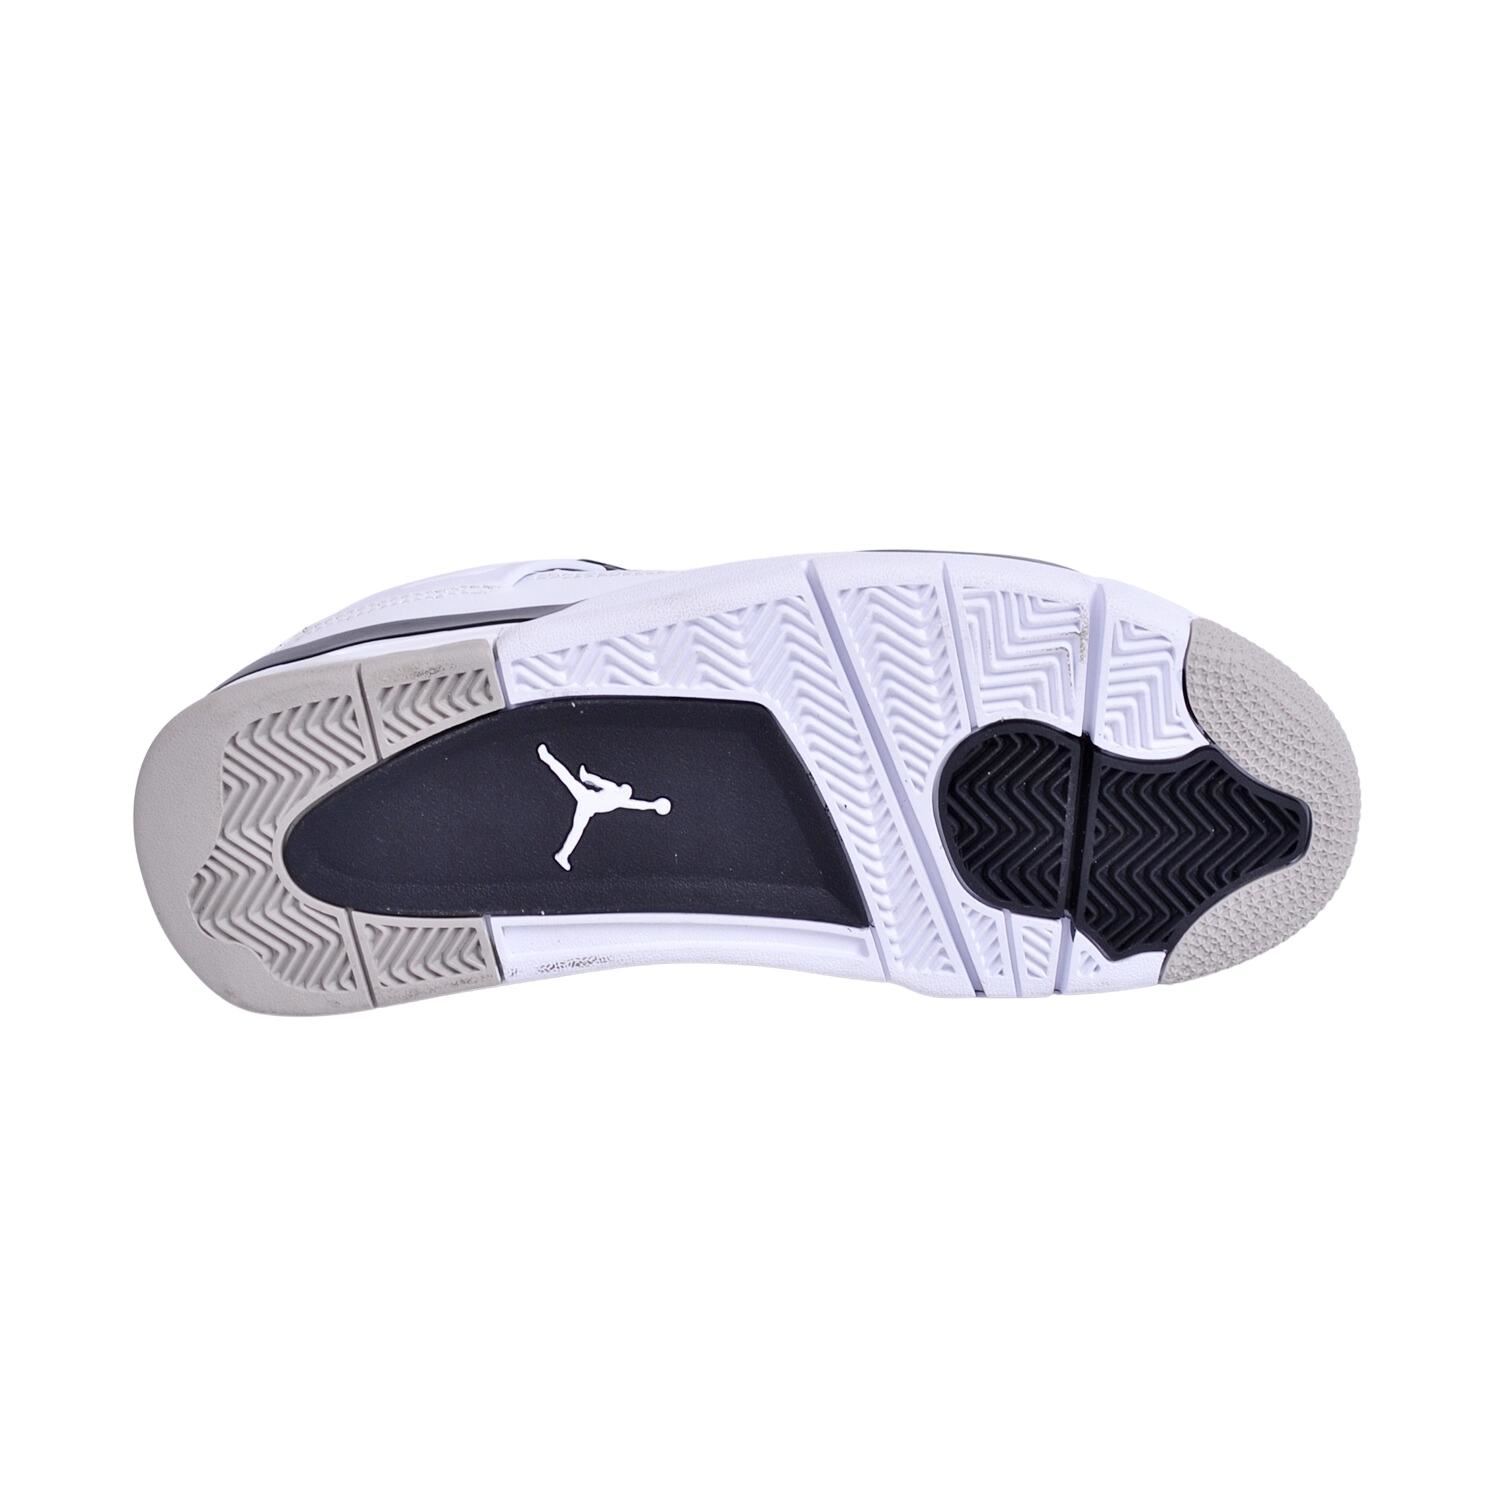 Nike 840606-192 Air Jordan Spor Ayakkabı